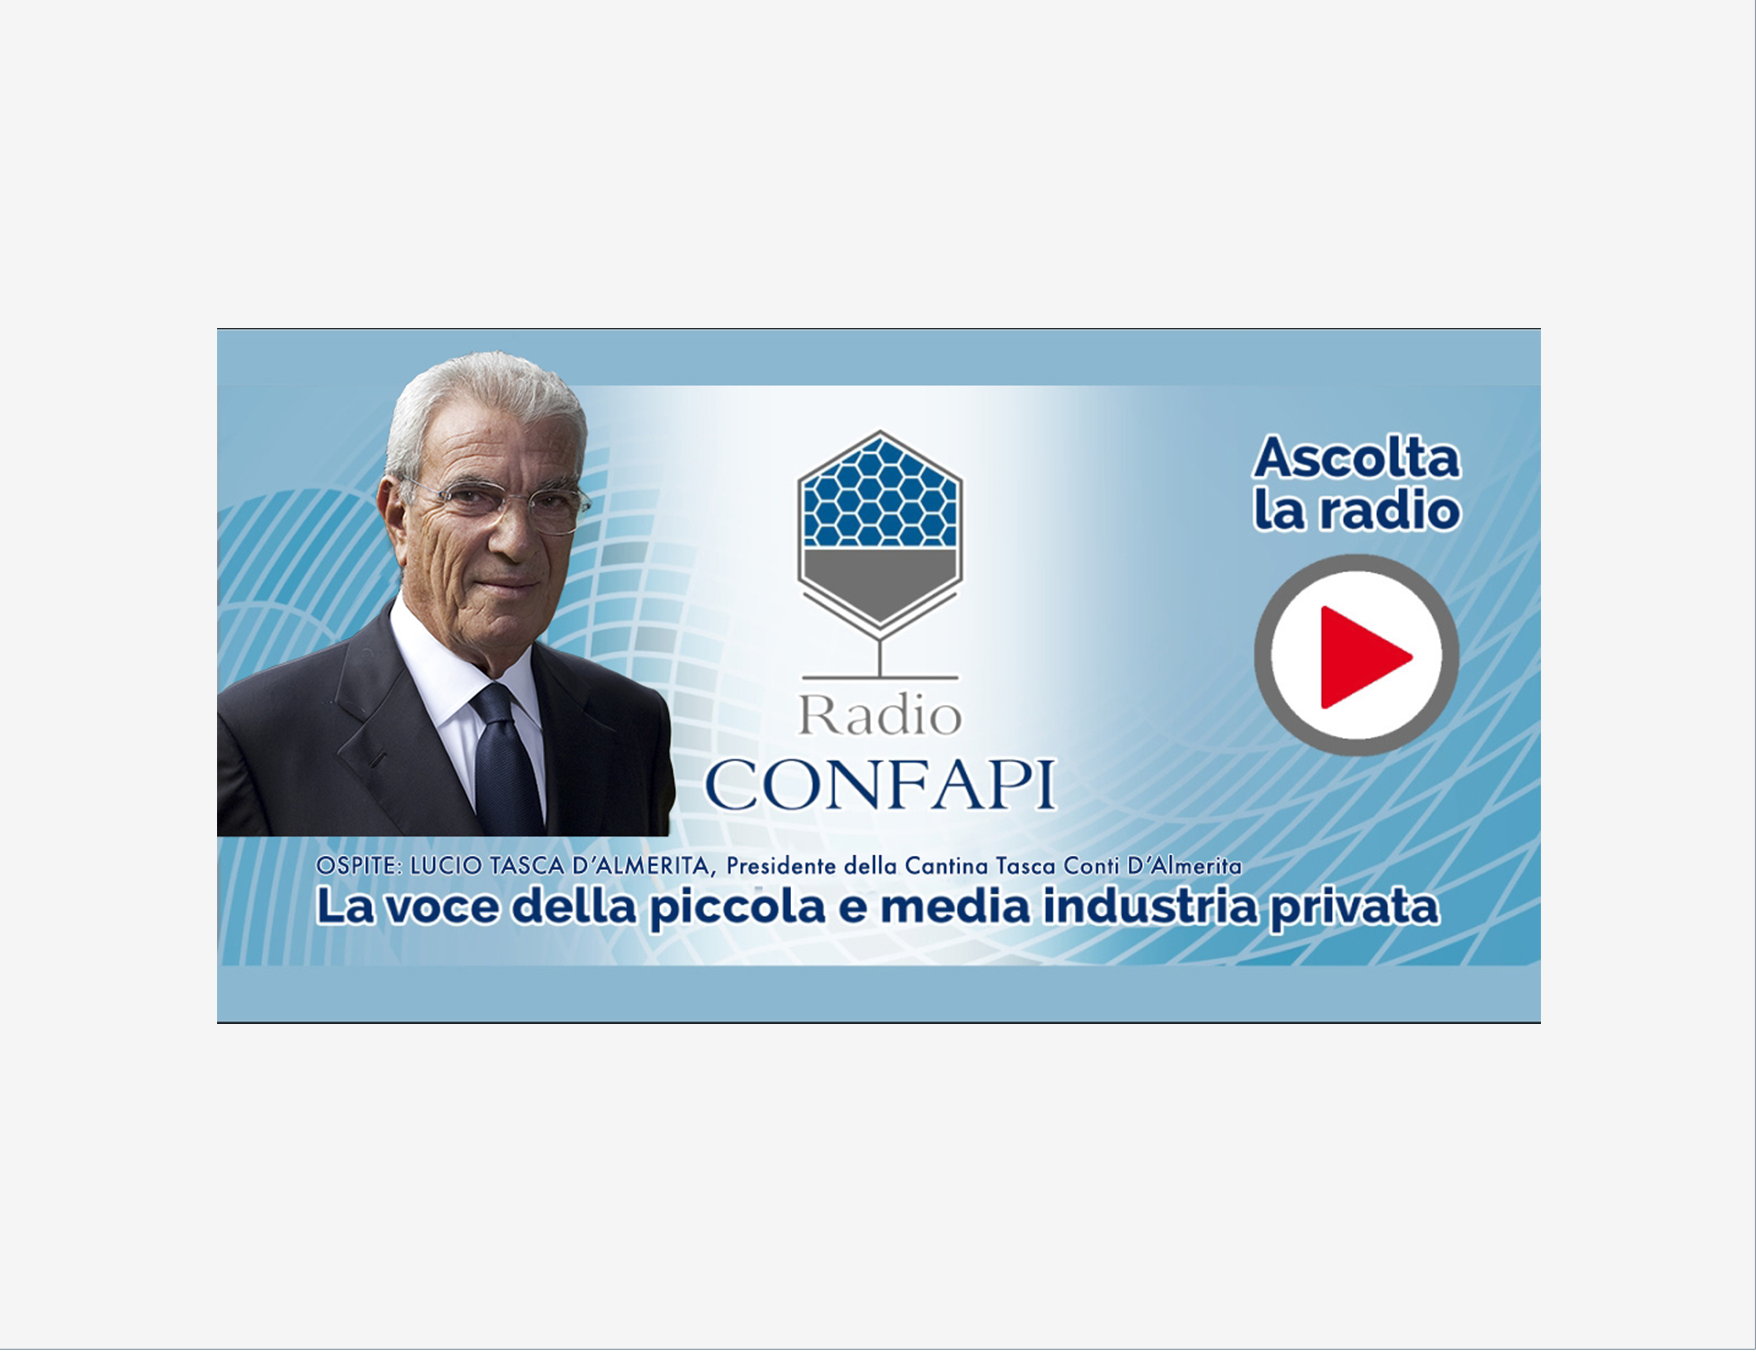 Al momento stai visualizzando 29 aprile ore 8.05, Lucio Tasca d’Almerita presidente della cantina Tasca Conti D’Almerita su Radio Confapi